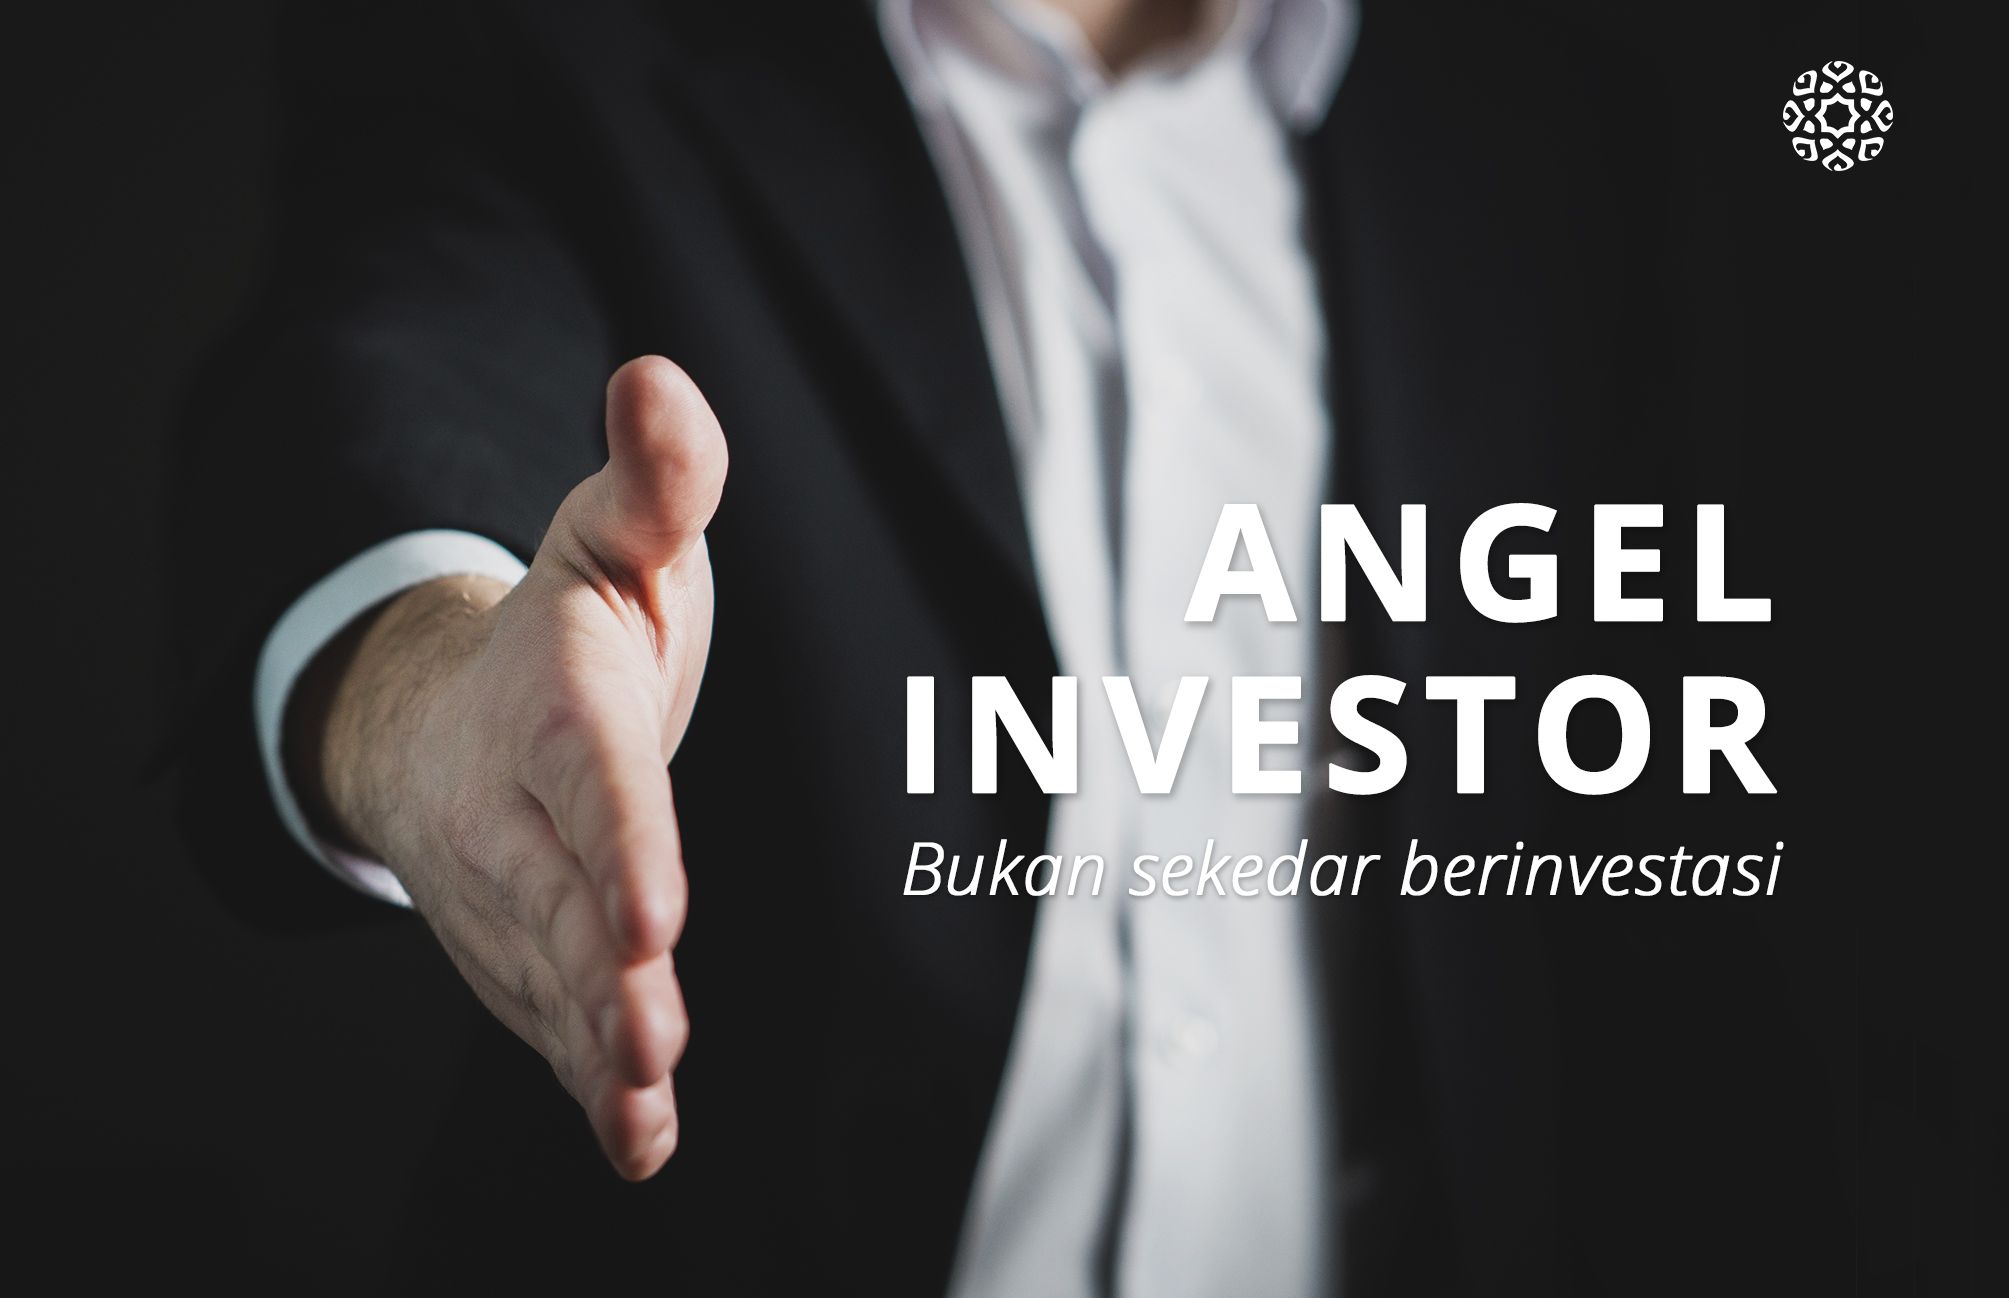 Menjadi Angel Investor dan Tebarkan Manfaat untuk Lingkungan Sekitar